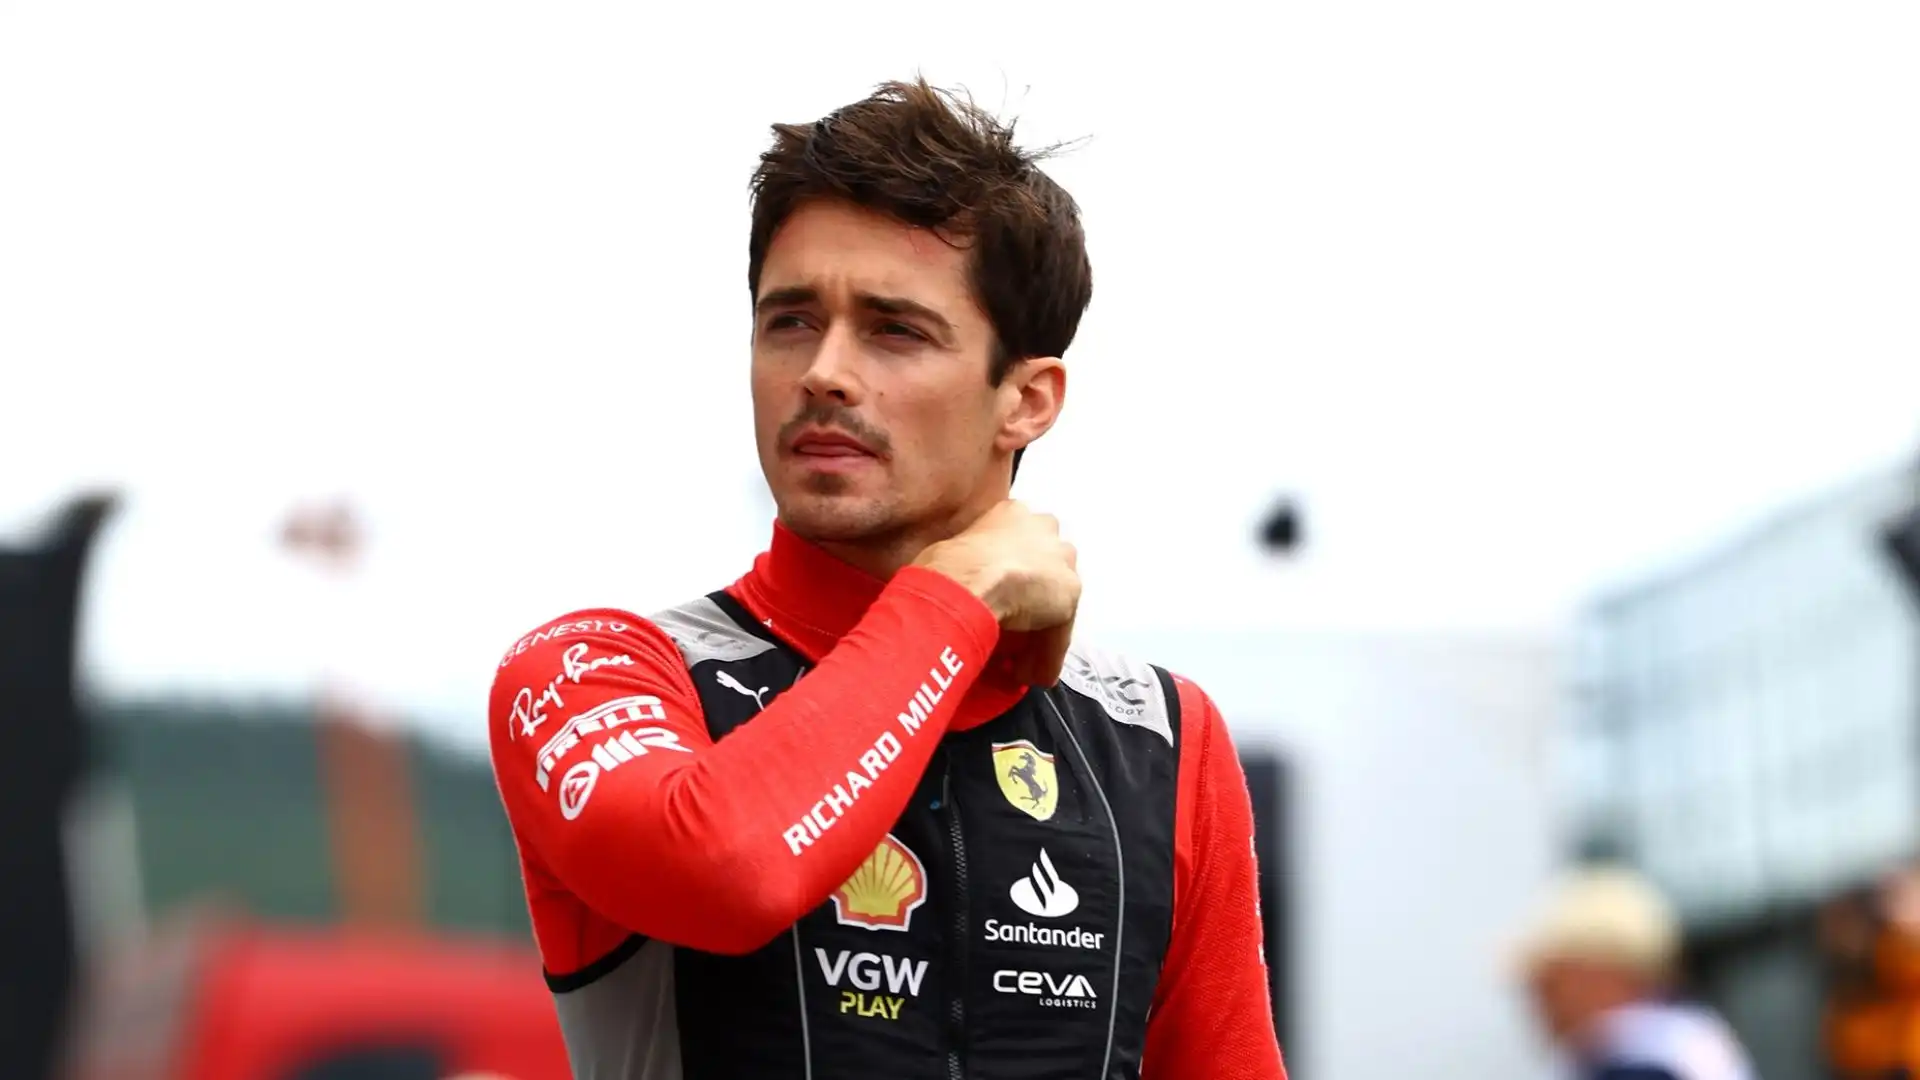 Secondo fonti riportate dal Corriere dello Sport, il pilota monegasco non era al corrente dell'arrivo del sette volte campione del mondo in Ferrari